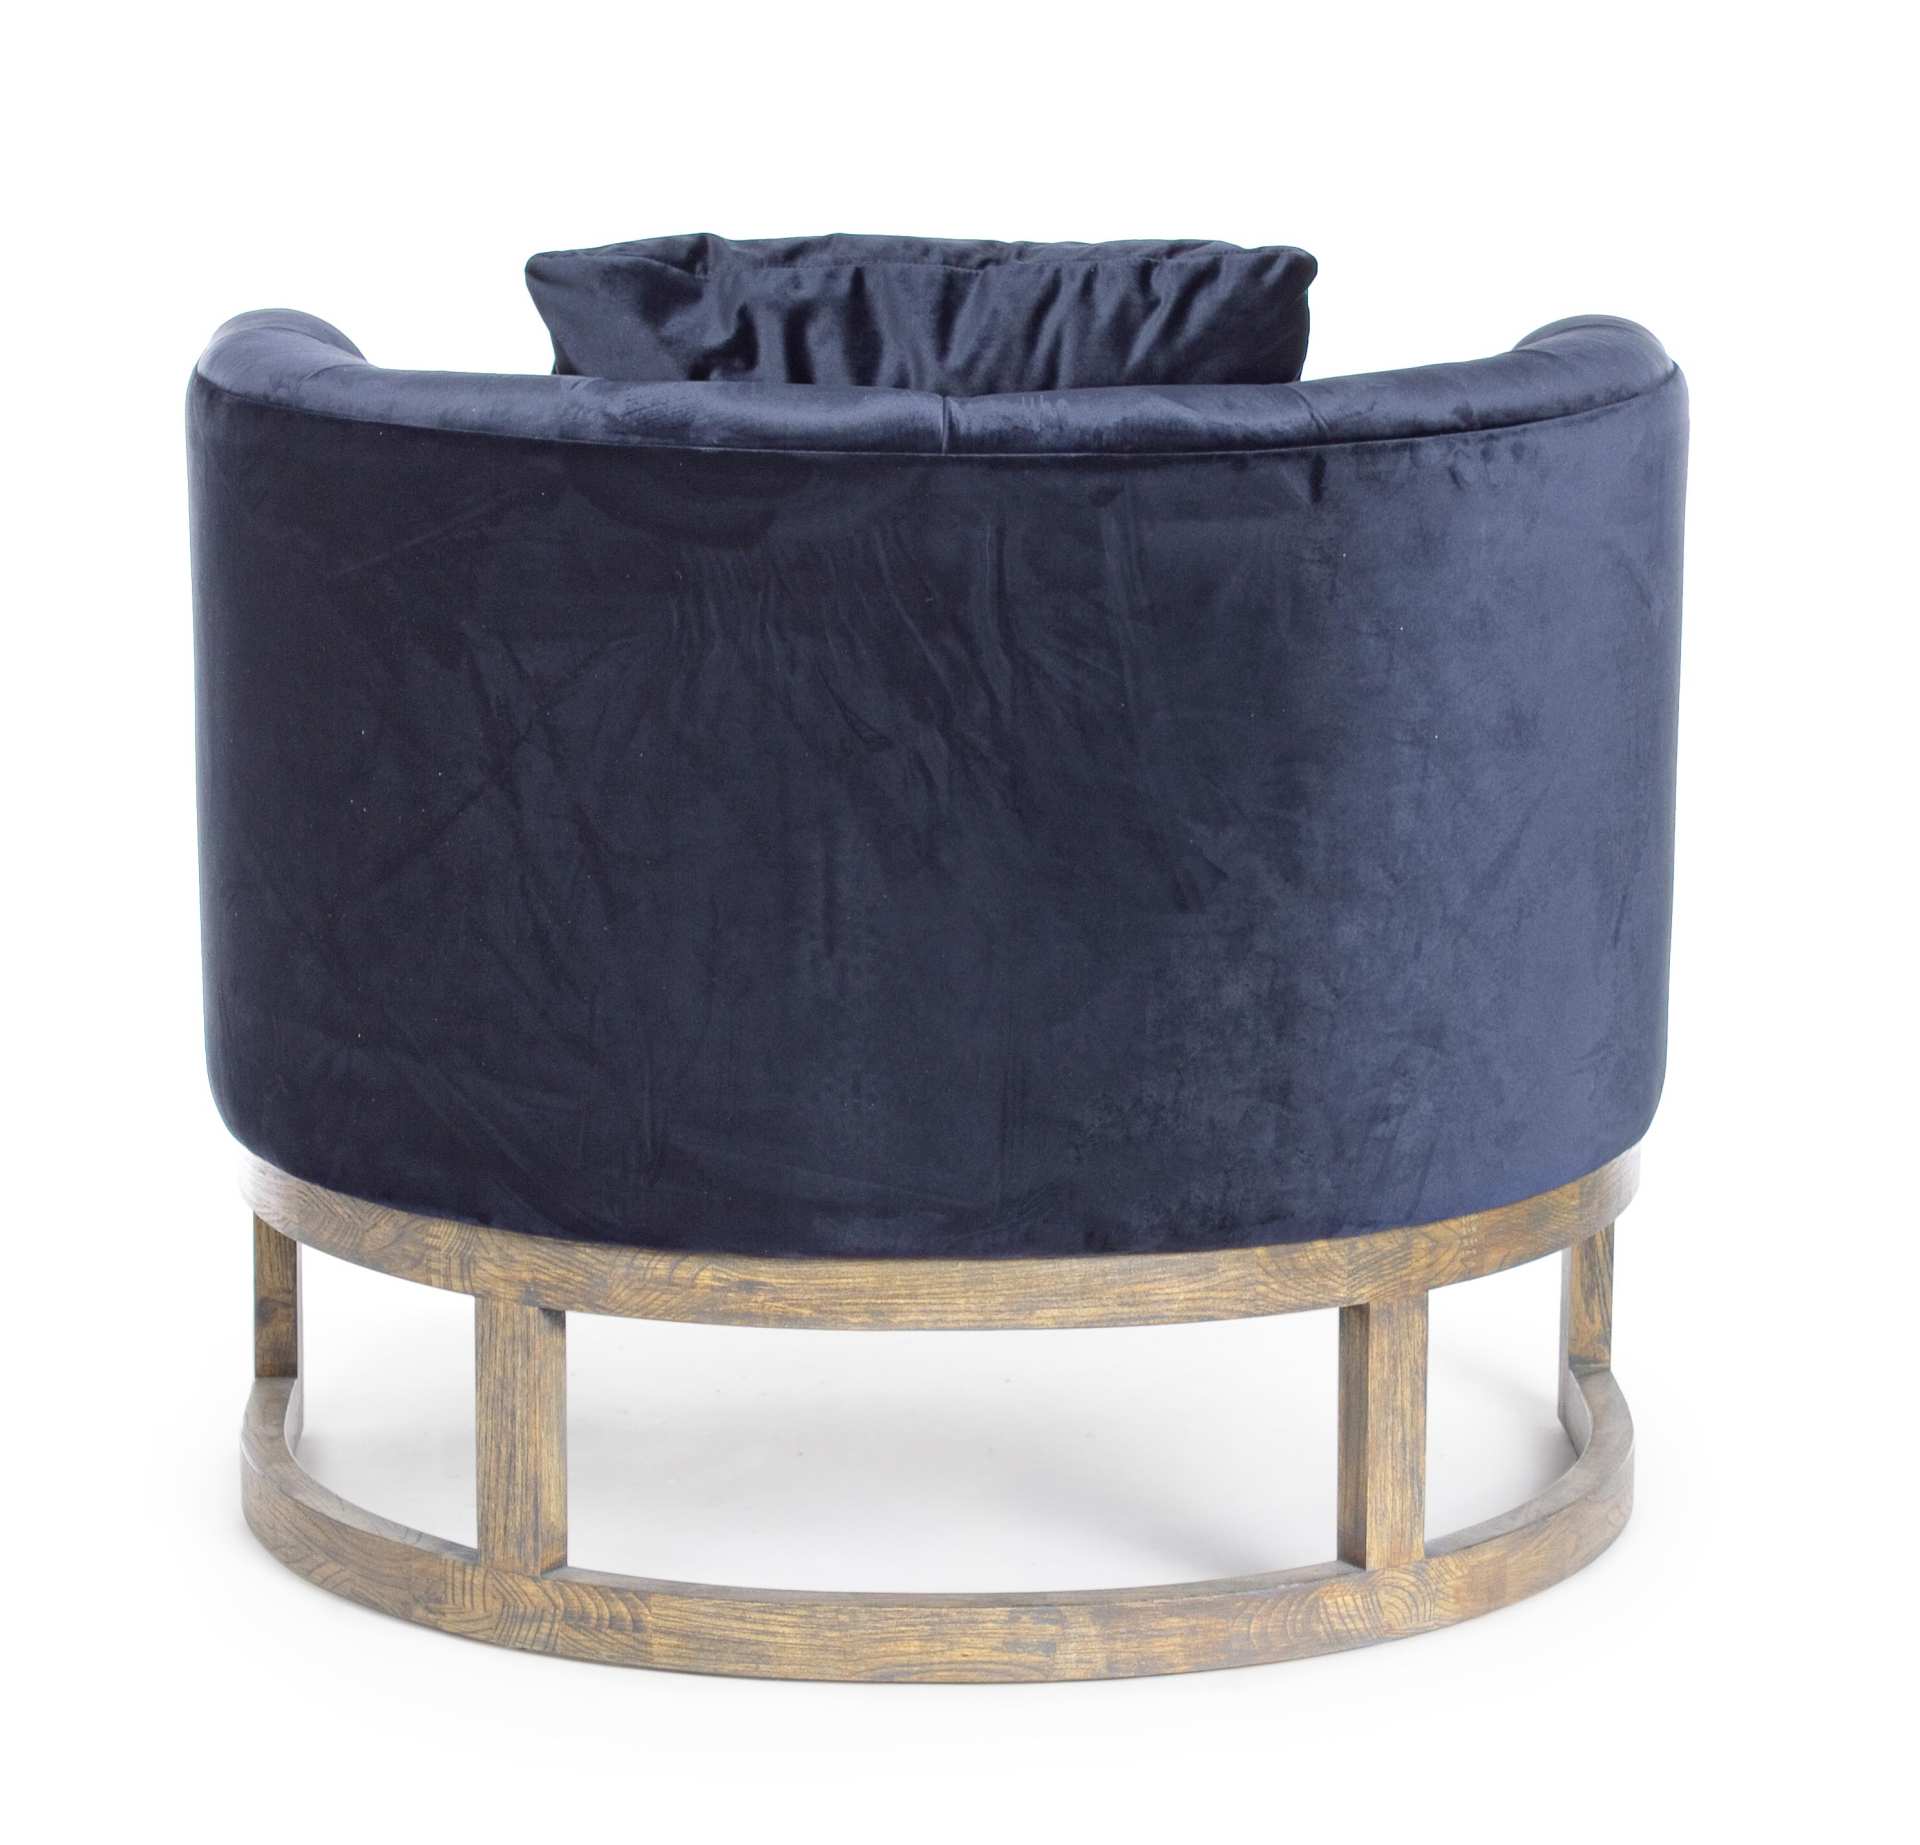 Der Sessel Midway überzeugt mit seinem klassischen Design. Gefertigt wurde er aus Samt, welches einen blauen Farbton besitzt. Das Gestell ist aus Eichenholz und hat eine natürliche Farbe. Der Sessel besitzt eine Sitzhöhe von 42 cm. Die Breite beträgt 90 c